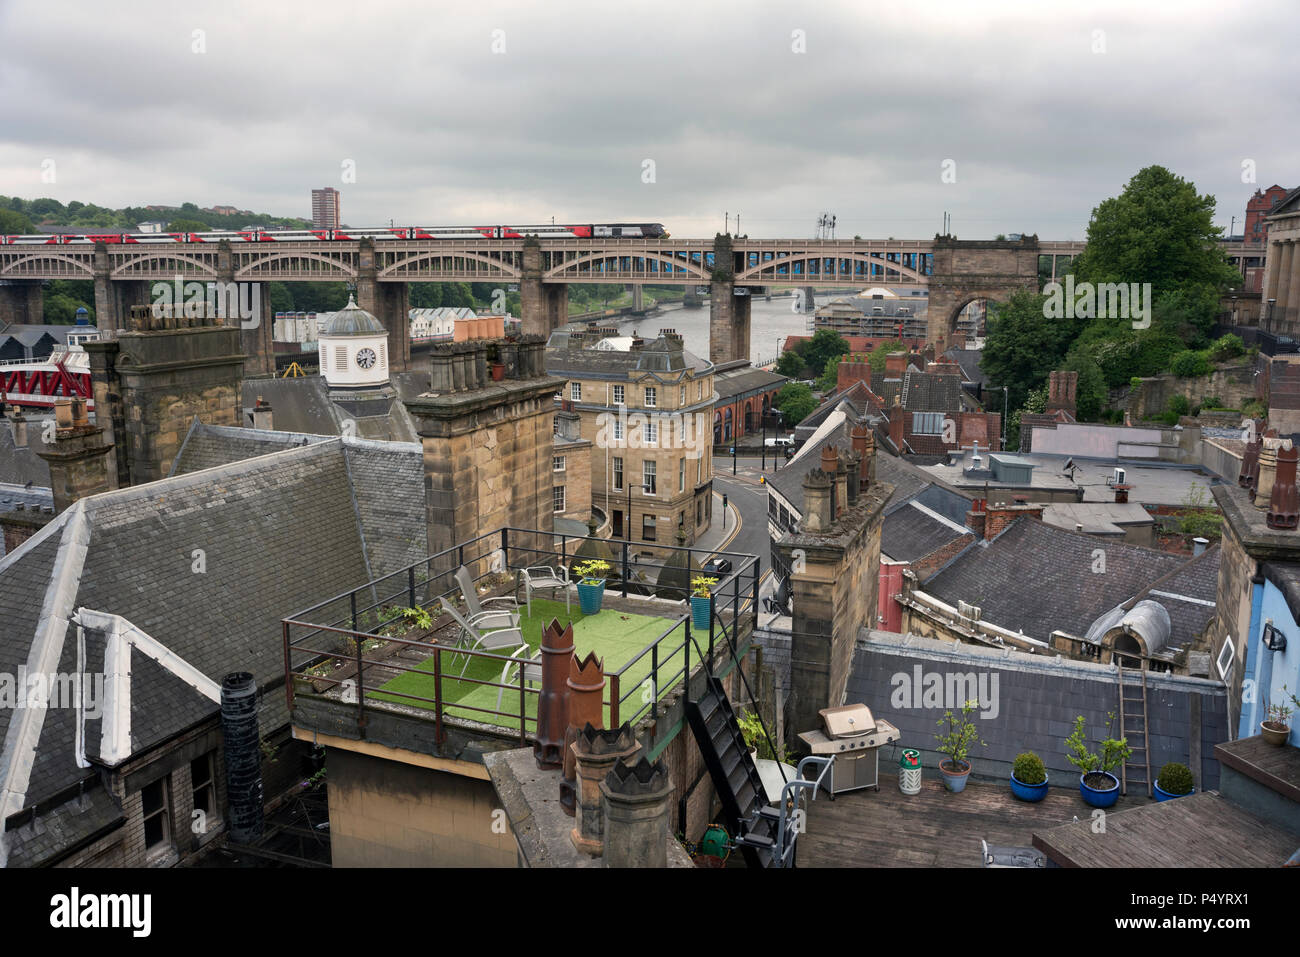 Une vue de la Tyne Bridge sur Newcastle-upon-Tyne les toits du vers le pont de haut niveau, avec un train de traverser. Banque D'Images